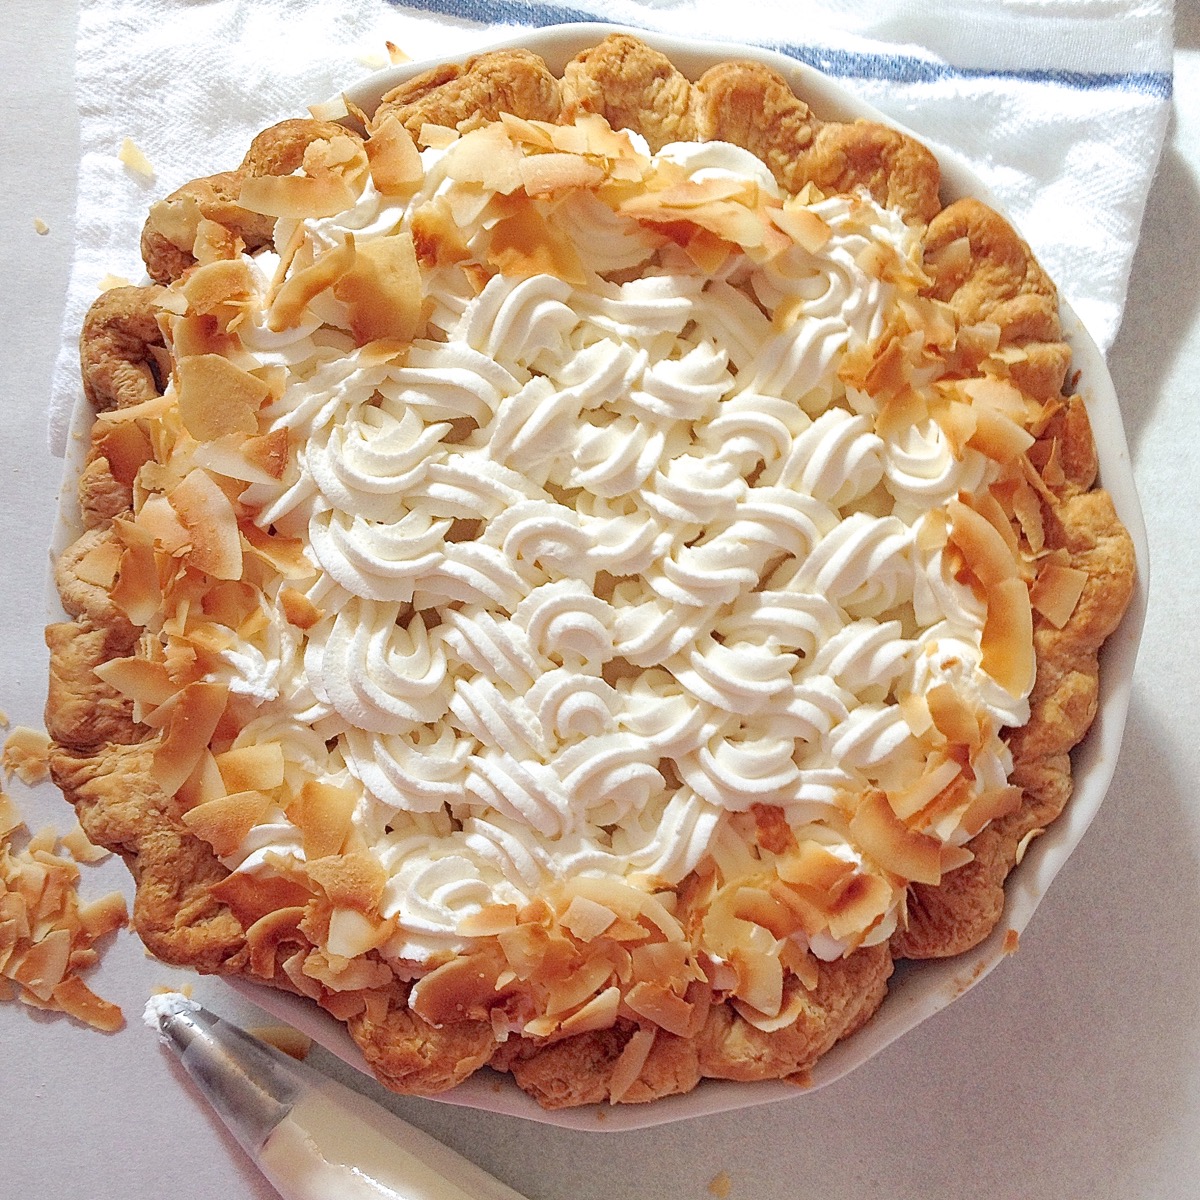 How to blind bake pie crust | King Arthur Flour